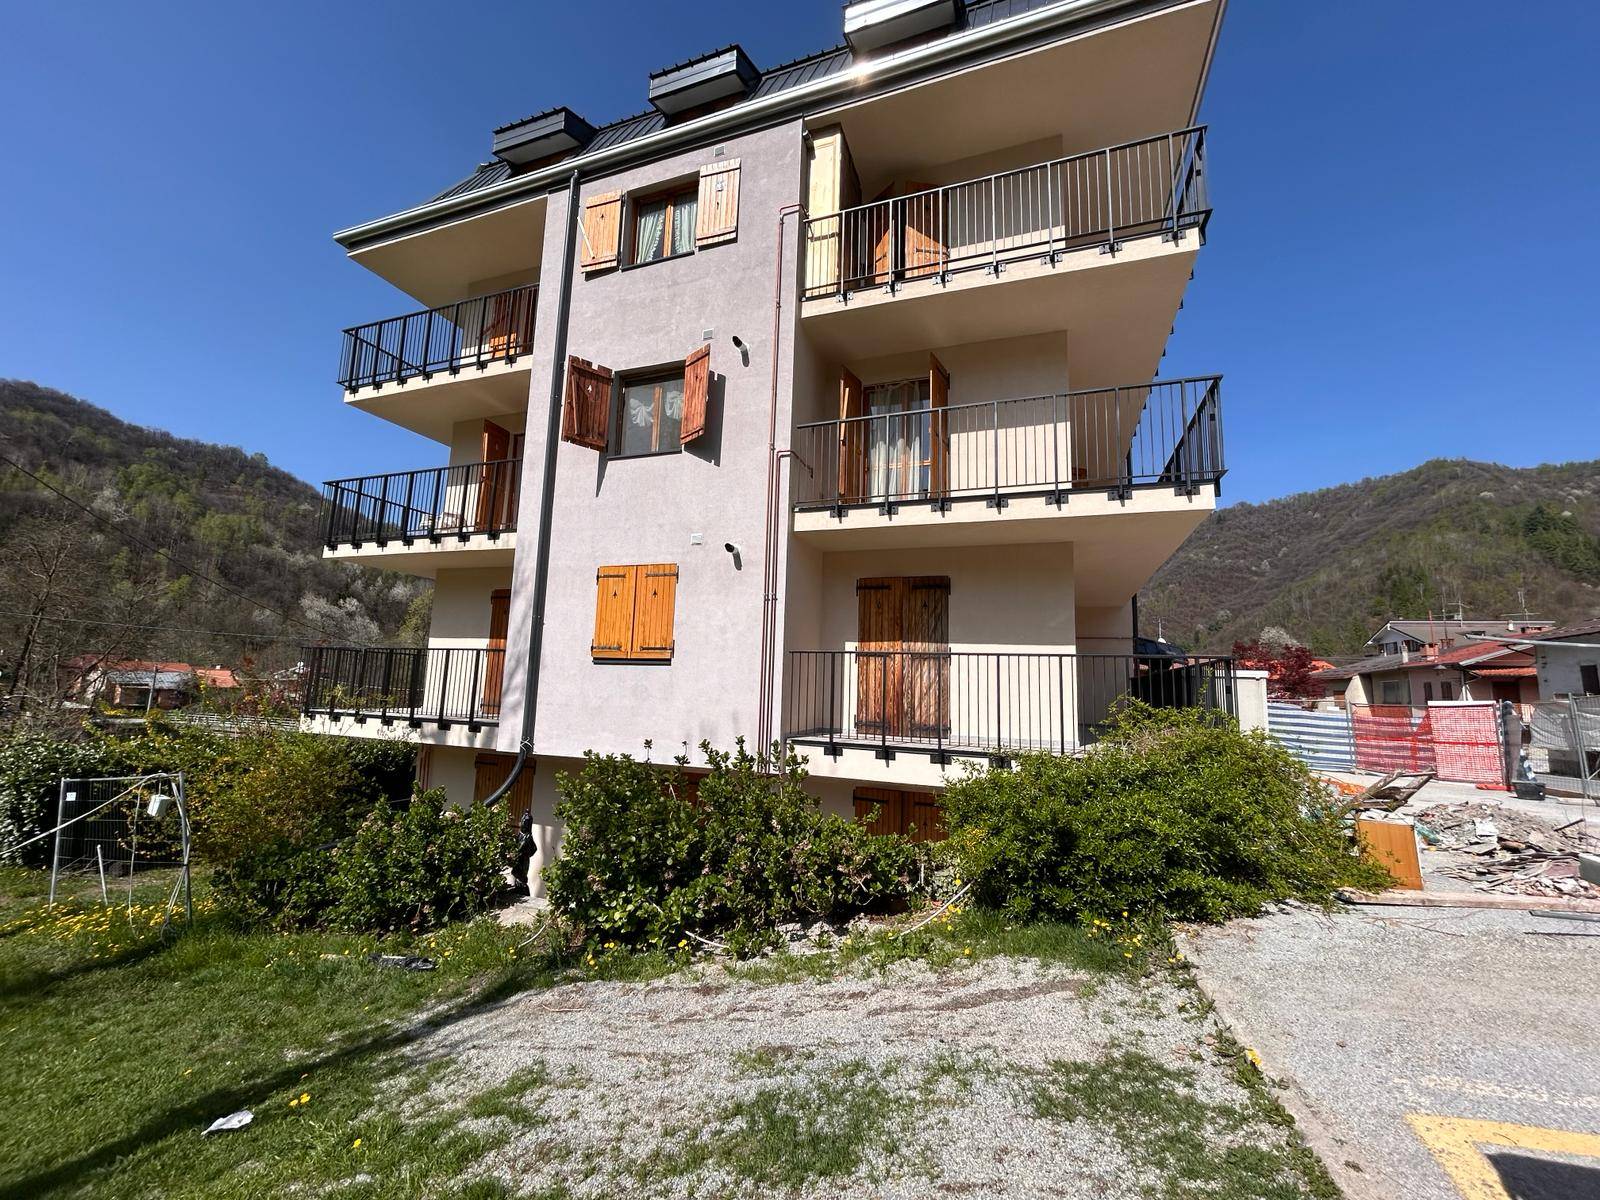 Appartamento in vendita a Chiusa di Pesio, 3 locali, prezzo € 35.000 | PortaleAgenzieImmobiliari.it